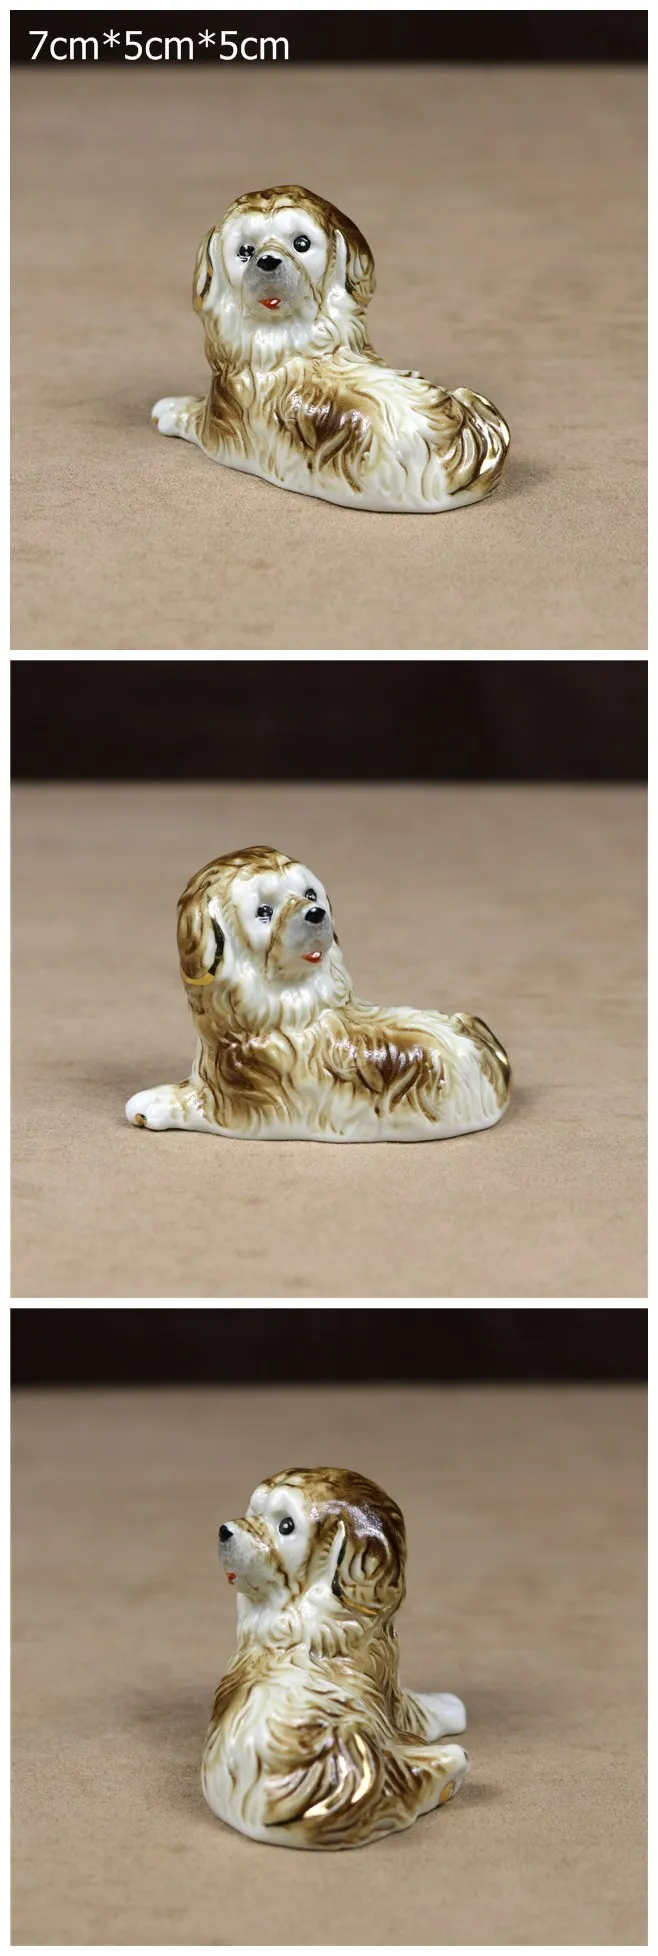 Фарфор тибетский мастиф миниатюрная керамика щенок собака фигурка Фея Сад Новинка декор искусство и ремесло орнамент аксессуары